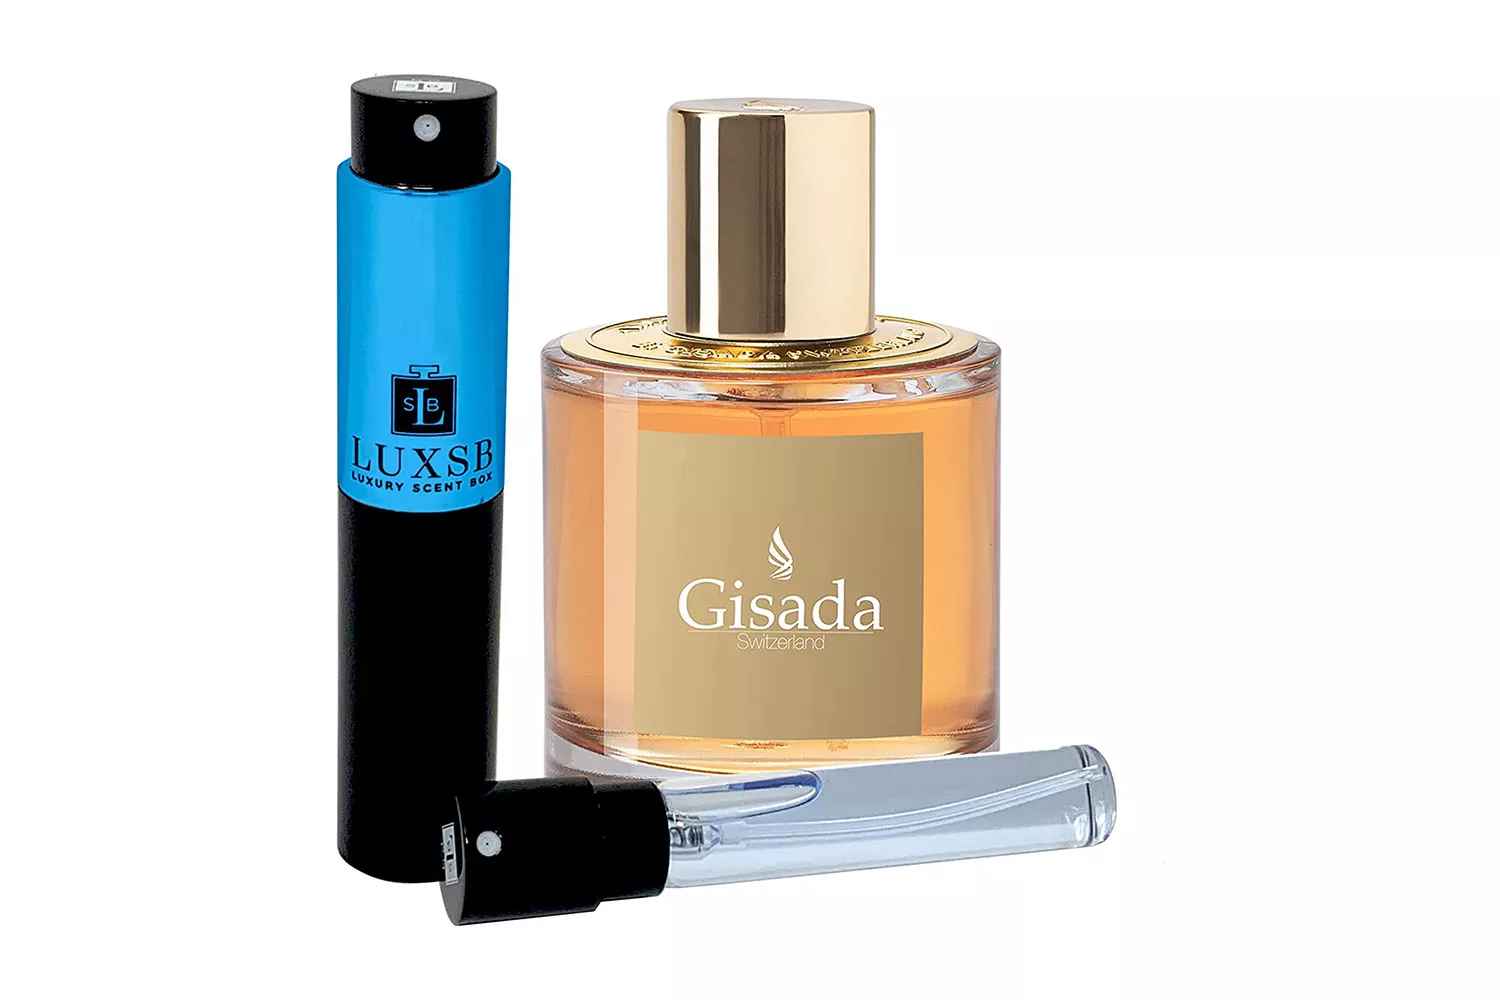 Luxsb-luxury-scent-box